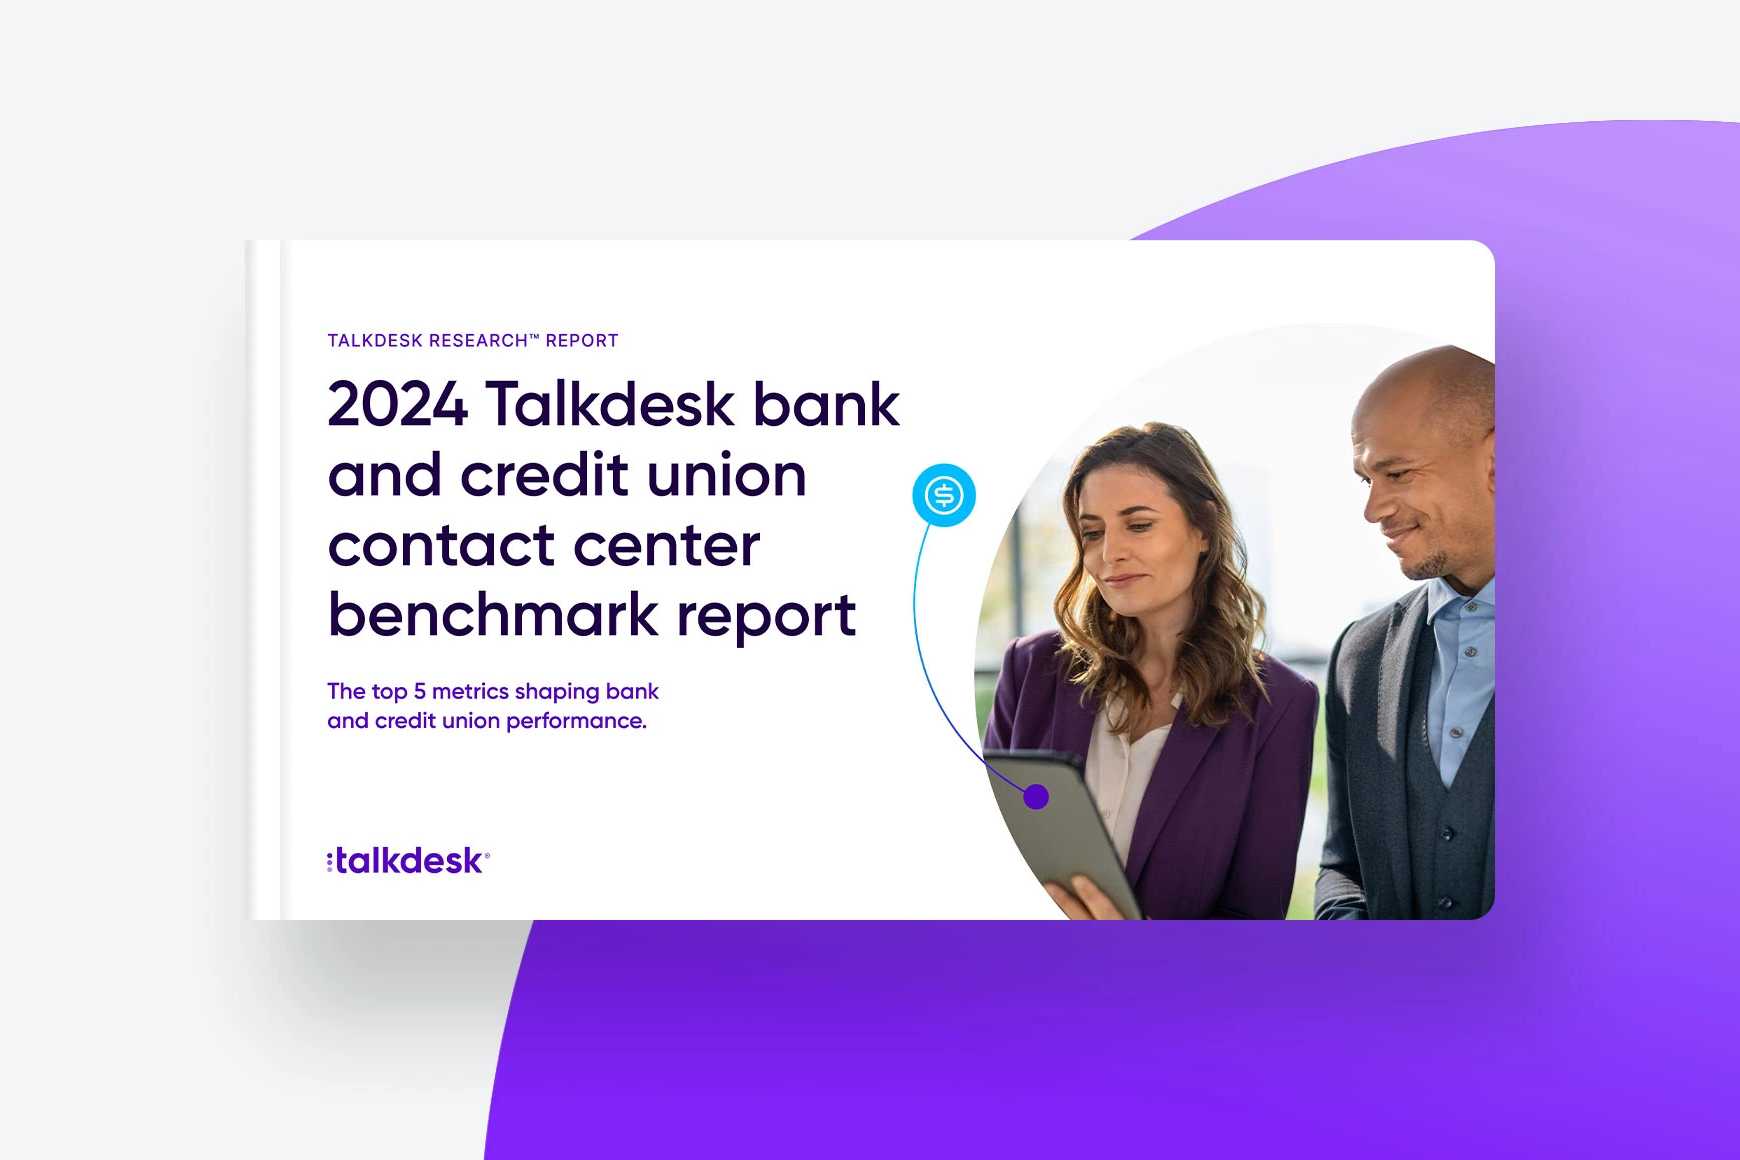 Informe de Bechmark de Talkdesk para Centros de Contacto de Bancos y Cooperativas de Crédito en 2024